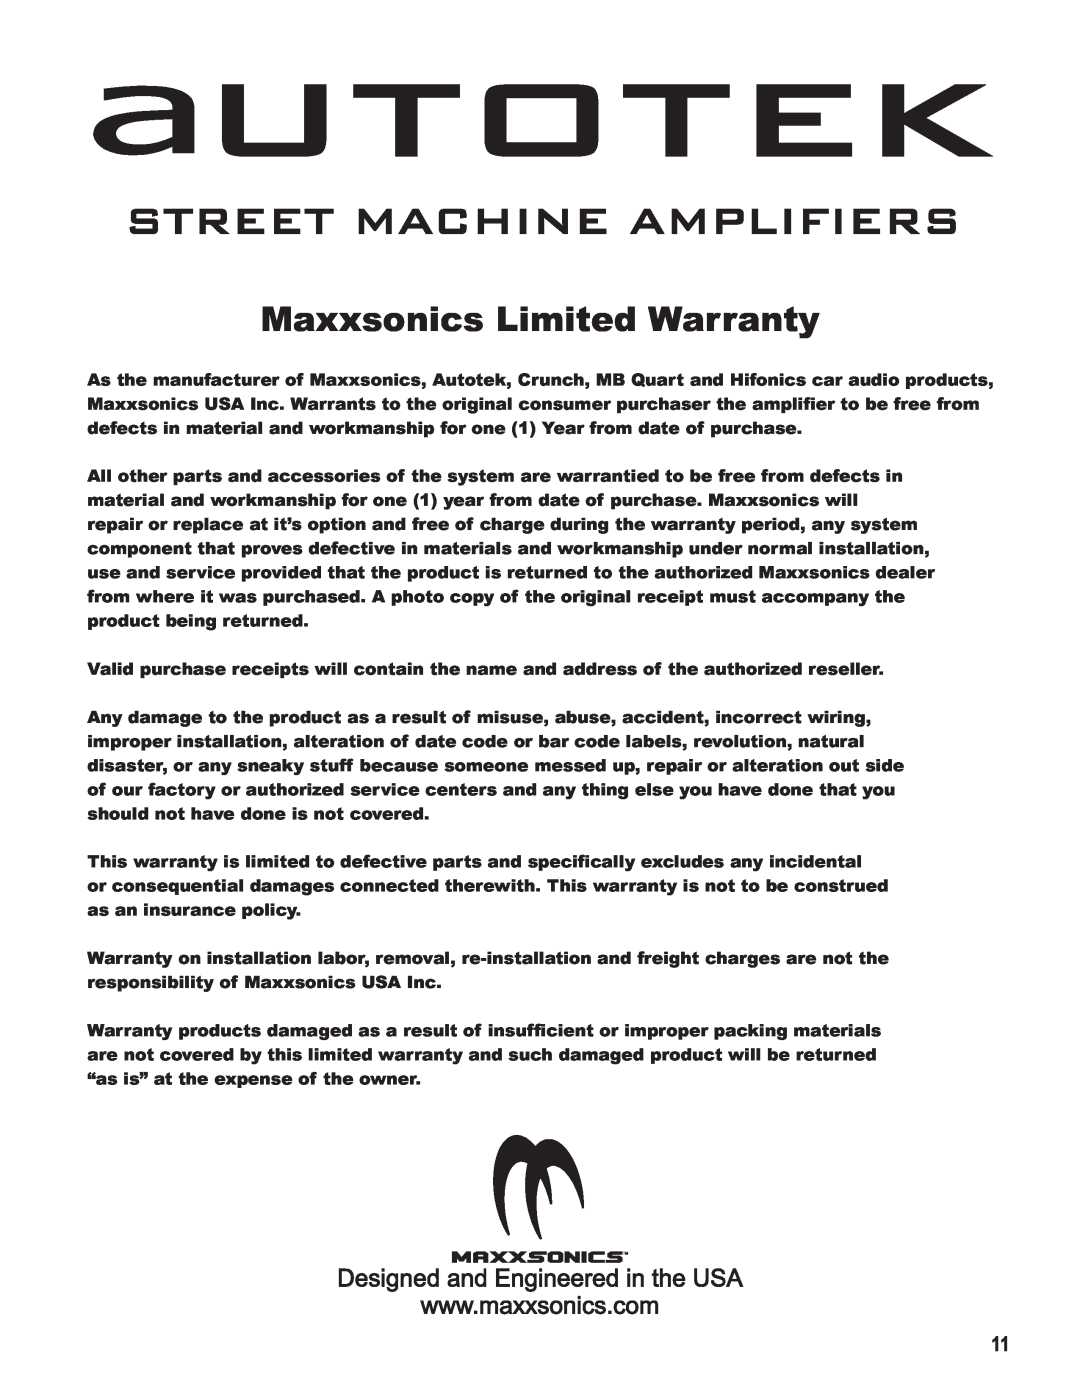 AutoTek SM1-100.1, SM4-800, SM2-1000, SM2-1200, SM4-1000 manual autotek, Street Machine Amplifiers, Maxxsonics Limited Warranty 